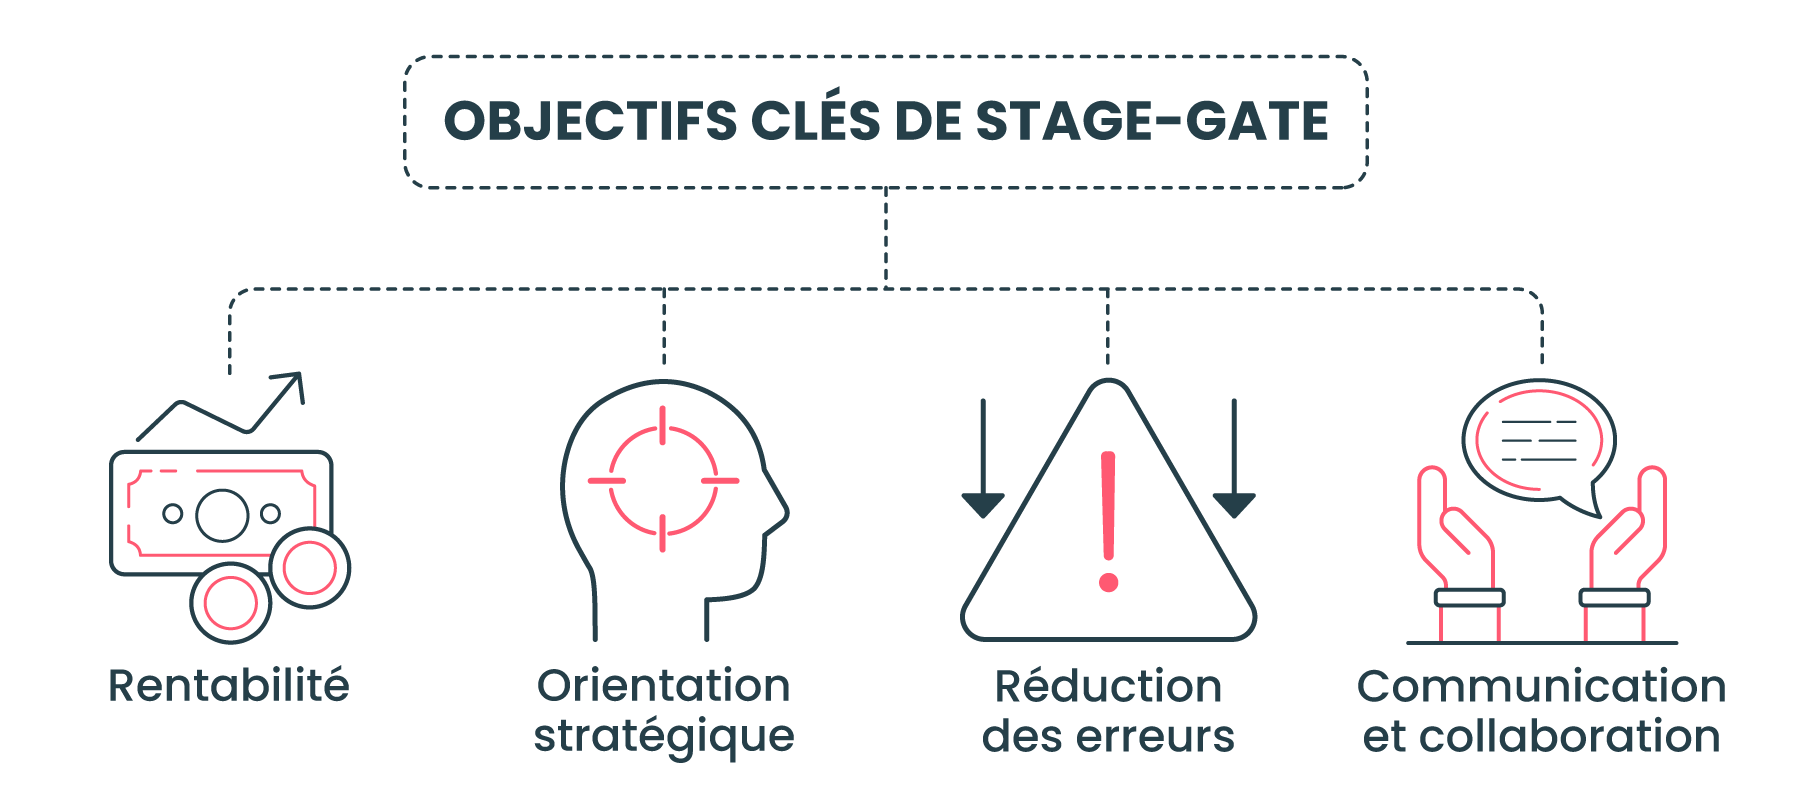 Objectifs clés de Stage-Gate :